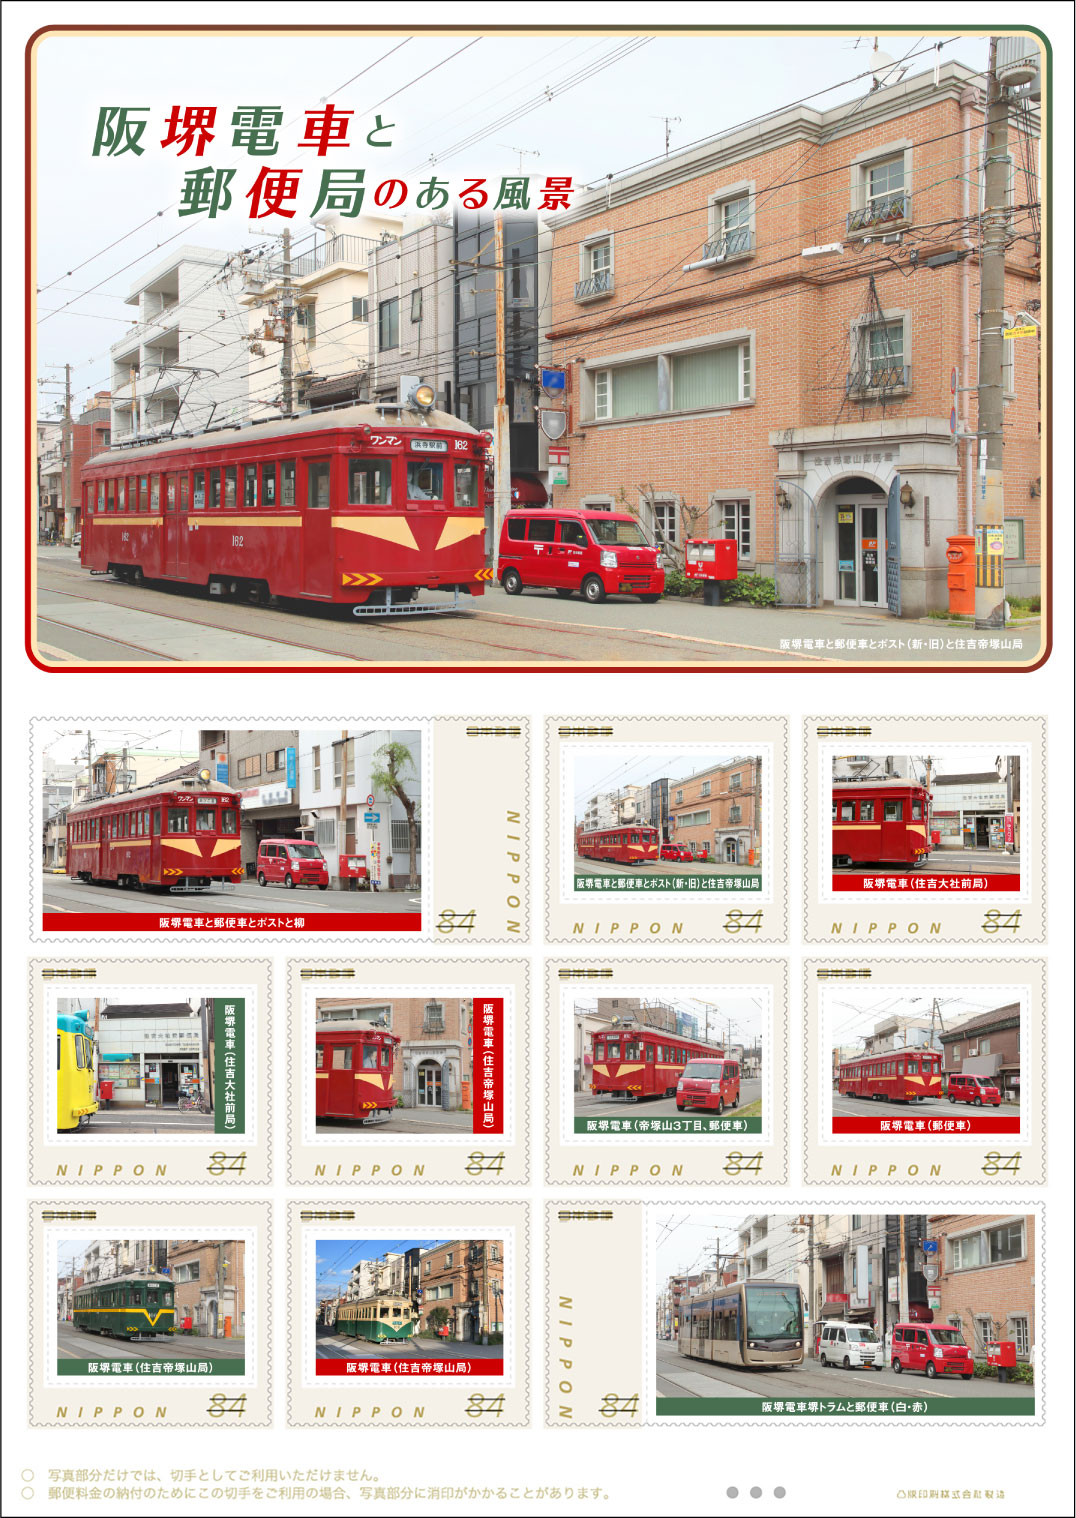 オリジナルフレーム切手「阪堺電車と郵便局のある風景」の販売開始と贈呈式の開催